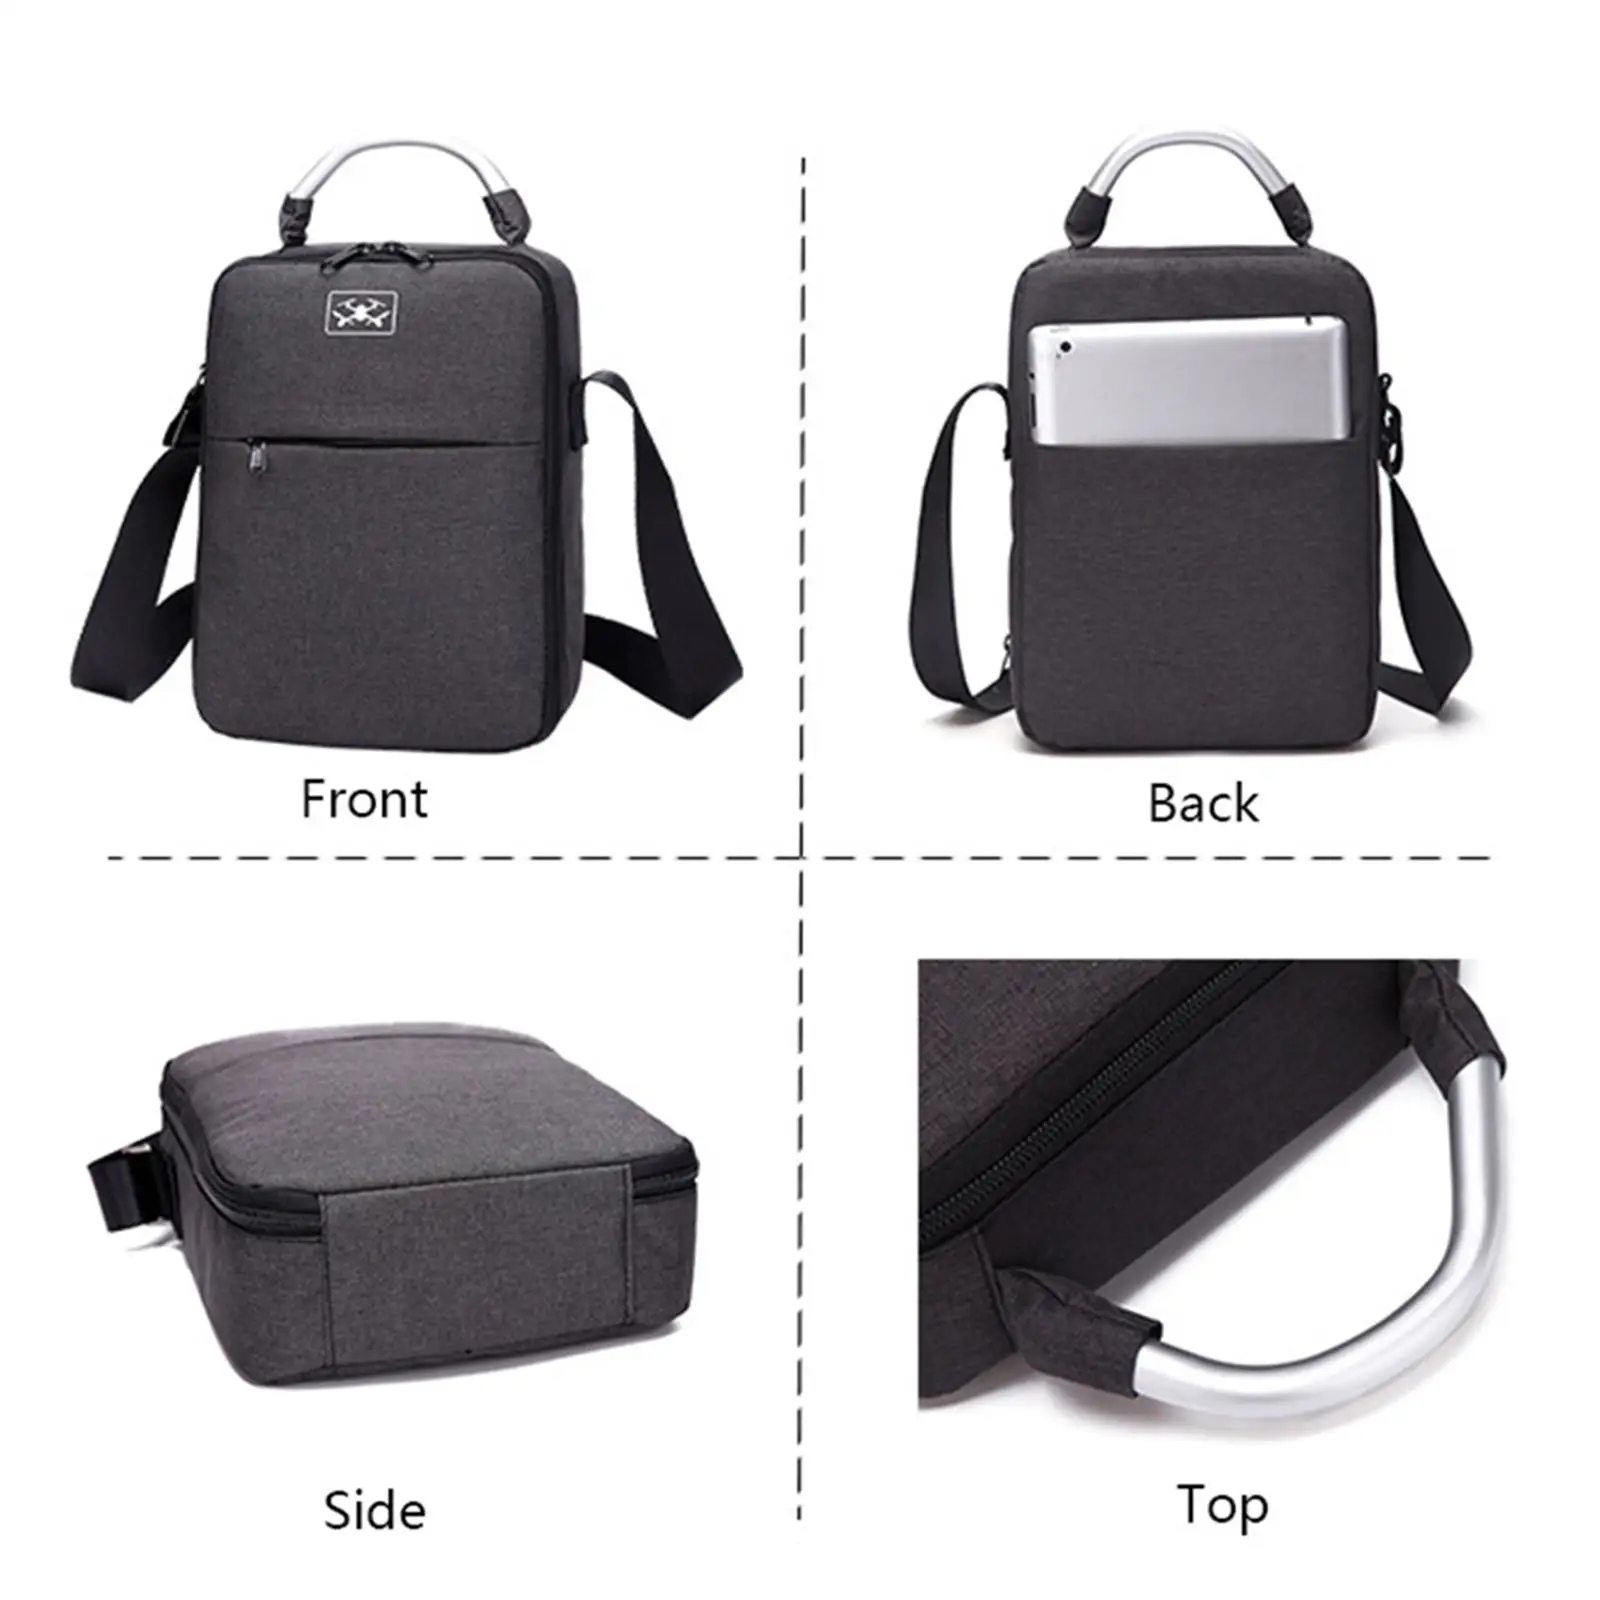 Portable Carrying Bag Large Handbag Oxford Protection Case Storage Case Shoulder Bag for DJI Mini 3 Pro Remote Controller Travel